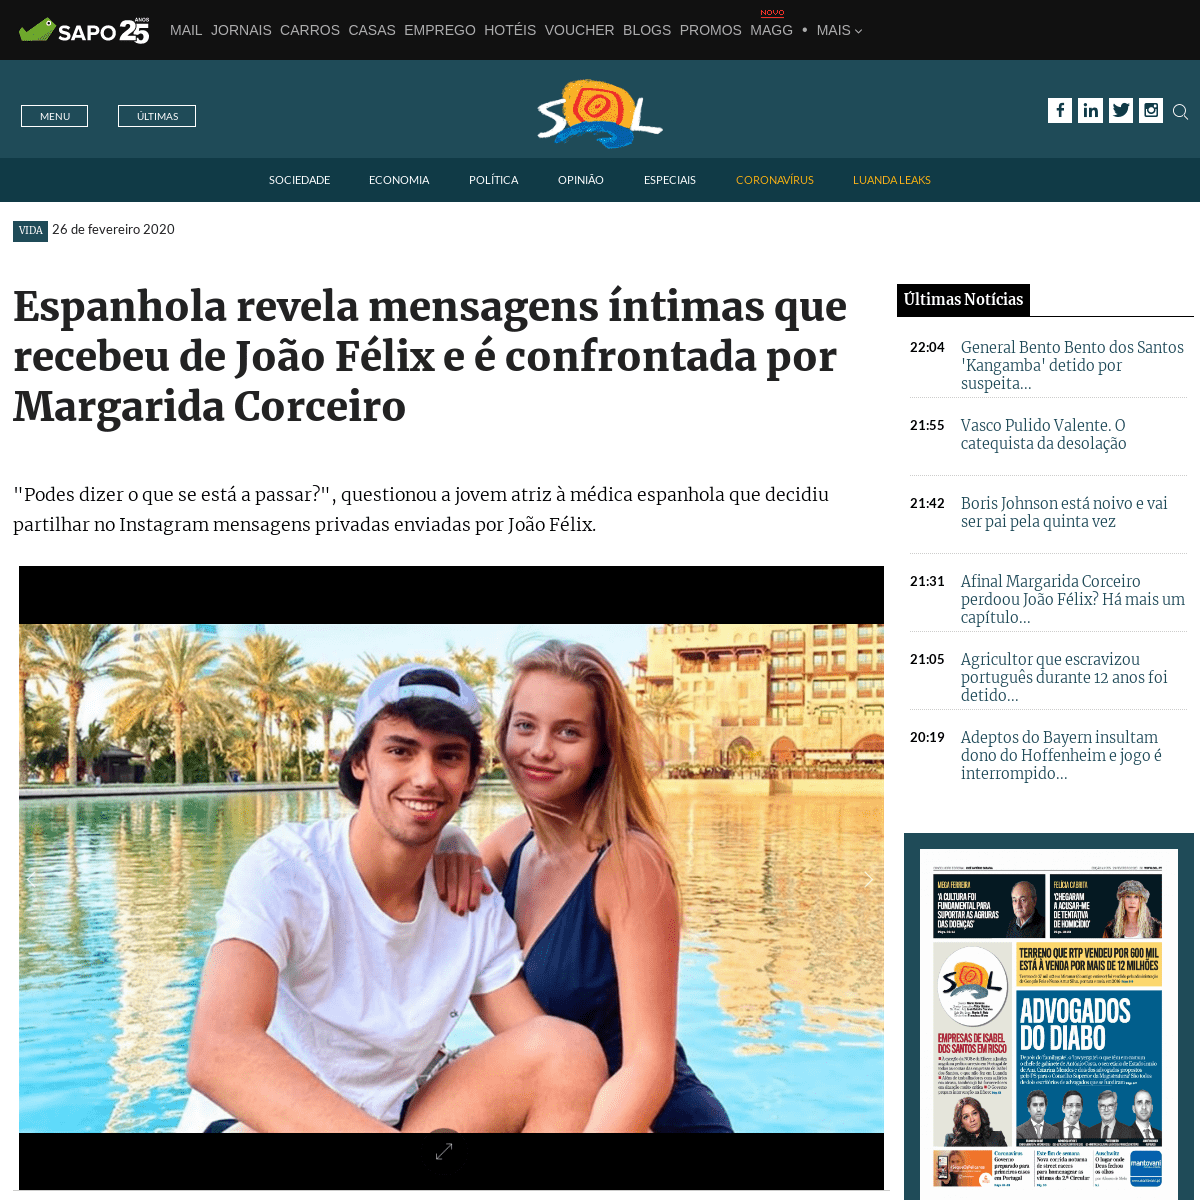 A complete backup of sol.sapo.pt/artigo/687335/espanhola-revela-mensagens-intimas-que-recebeu-de-joao-felix-e-e-confrontada-por-